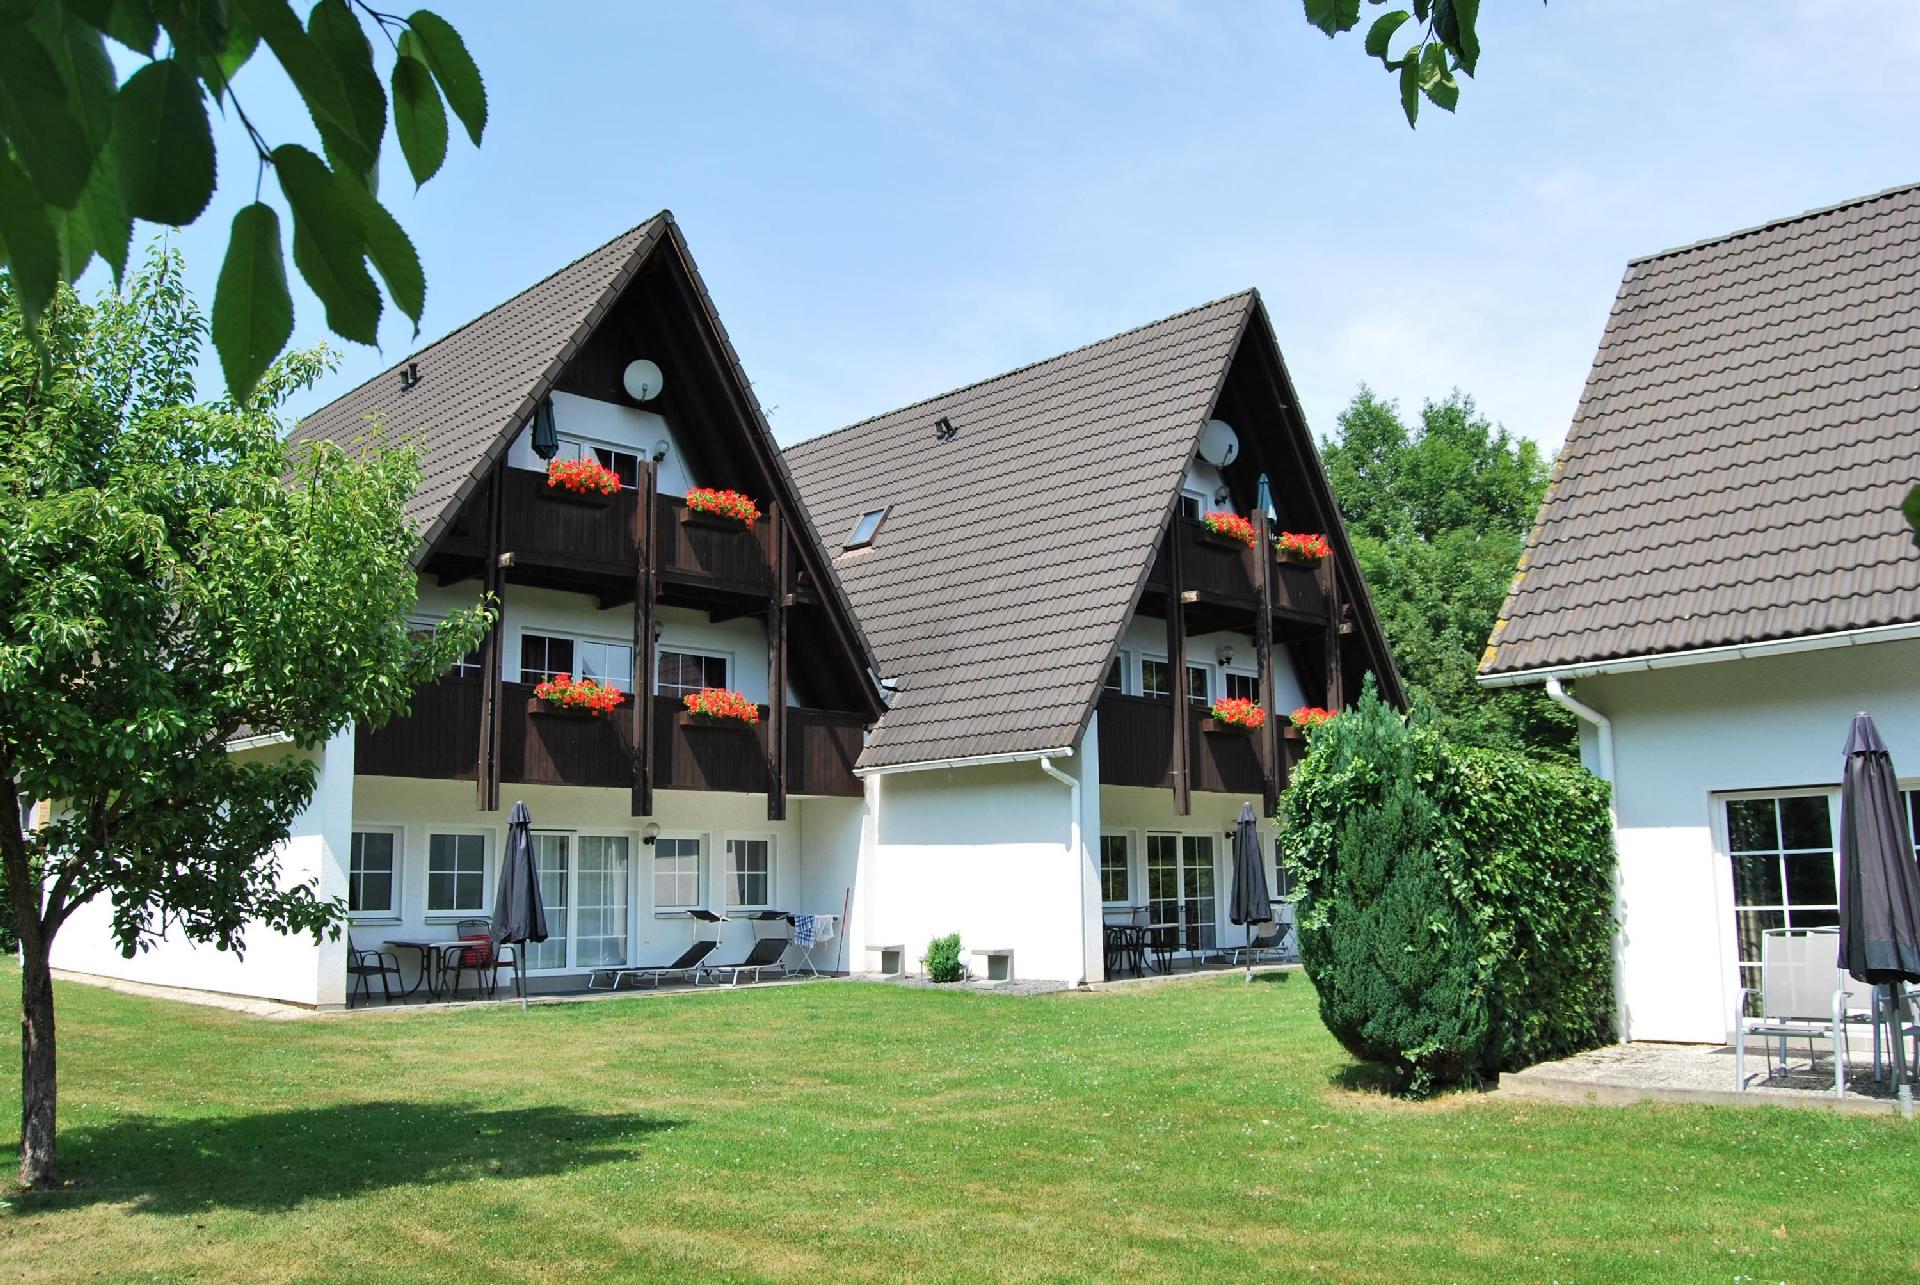 Wohnung in Walkenried mit Großem Balkon Ferienwohnung in Deutschland